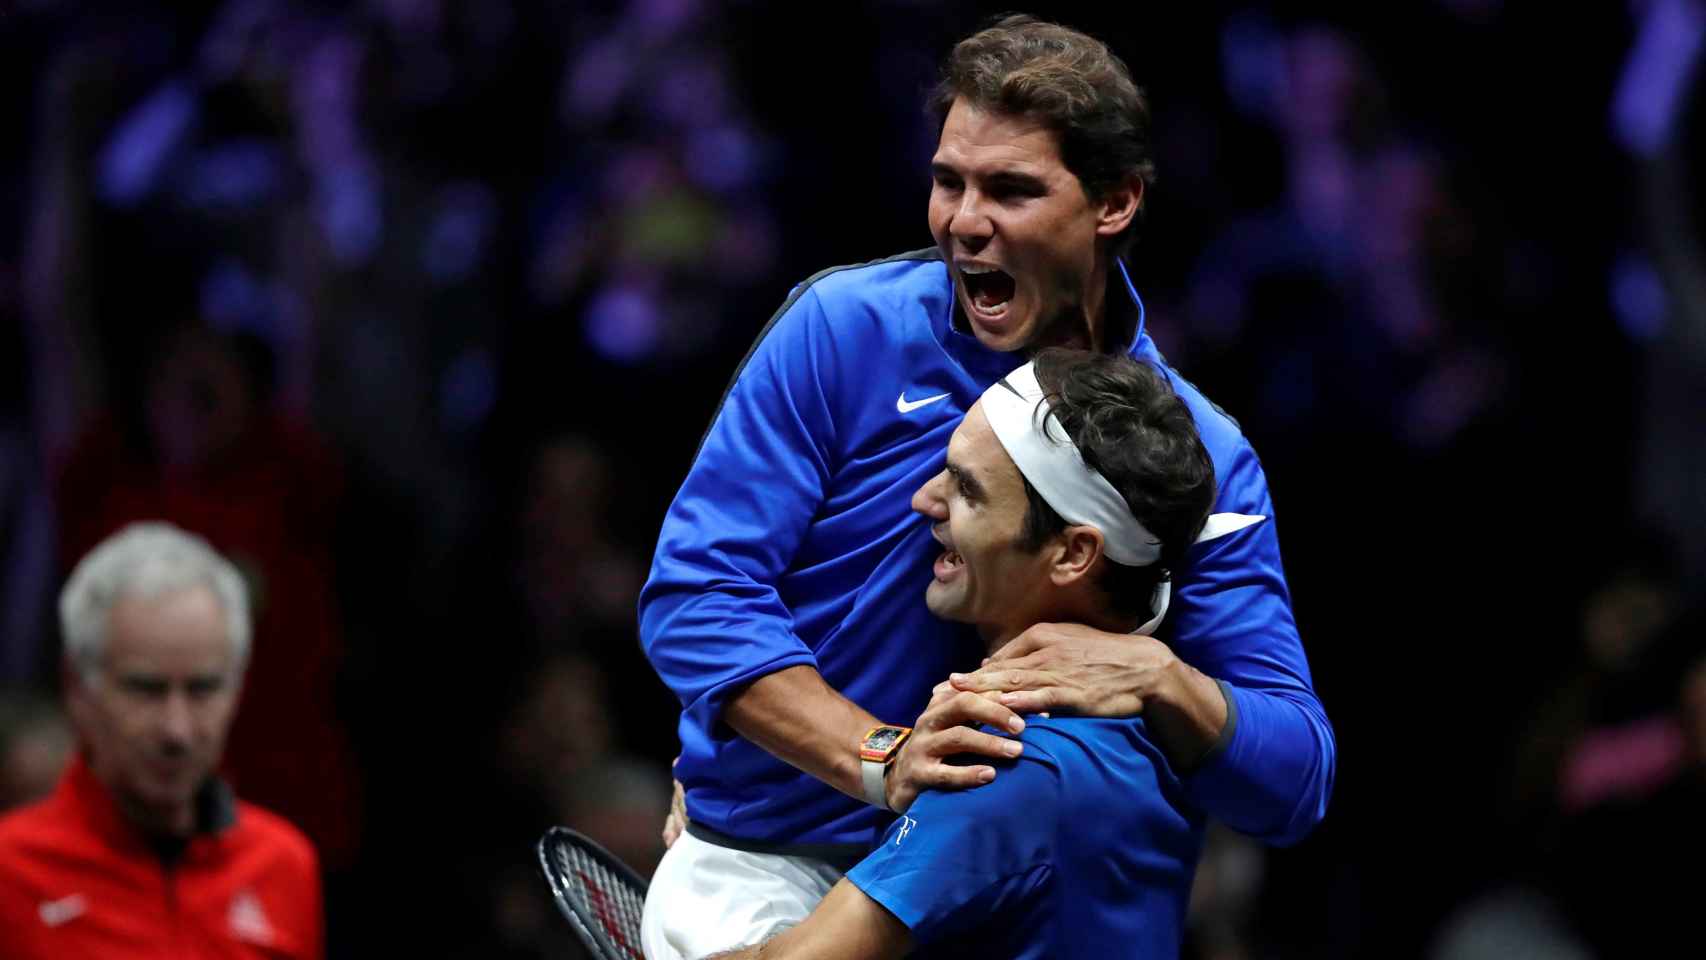 Nadal y Federer juntos en la Laver Cup 2017.